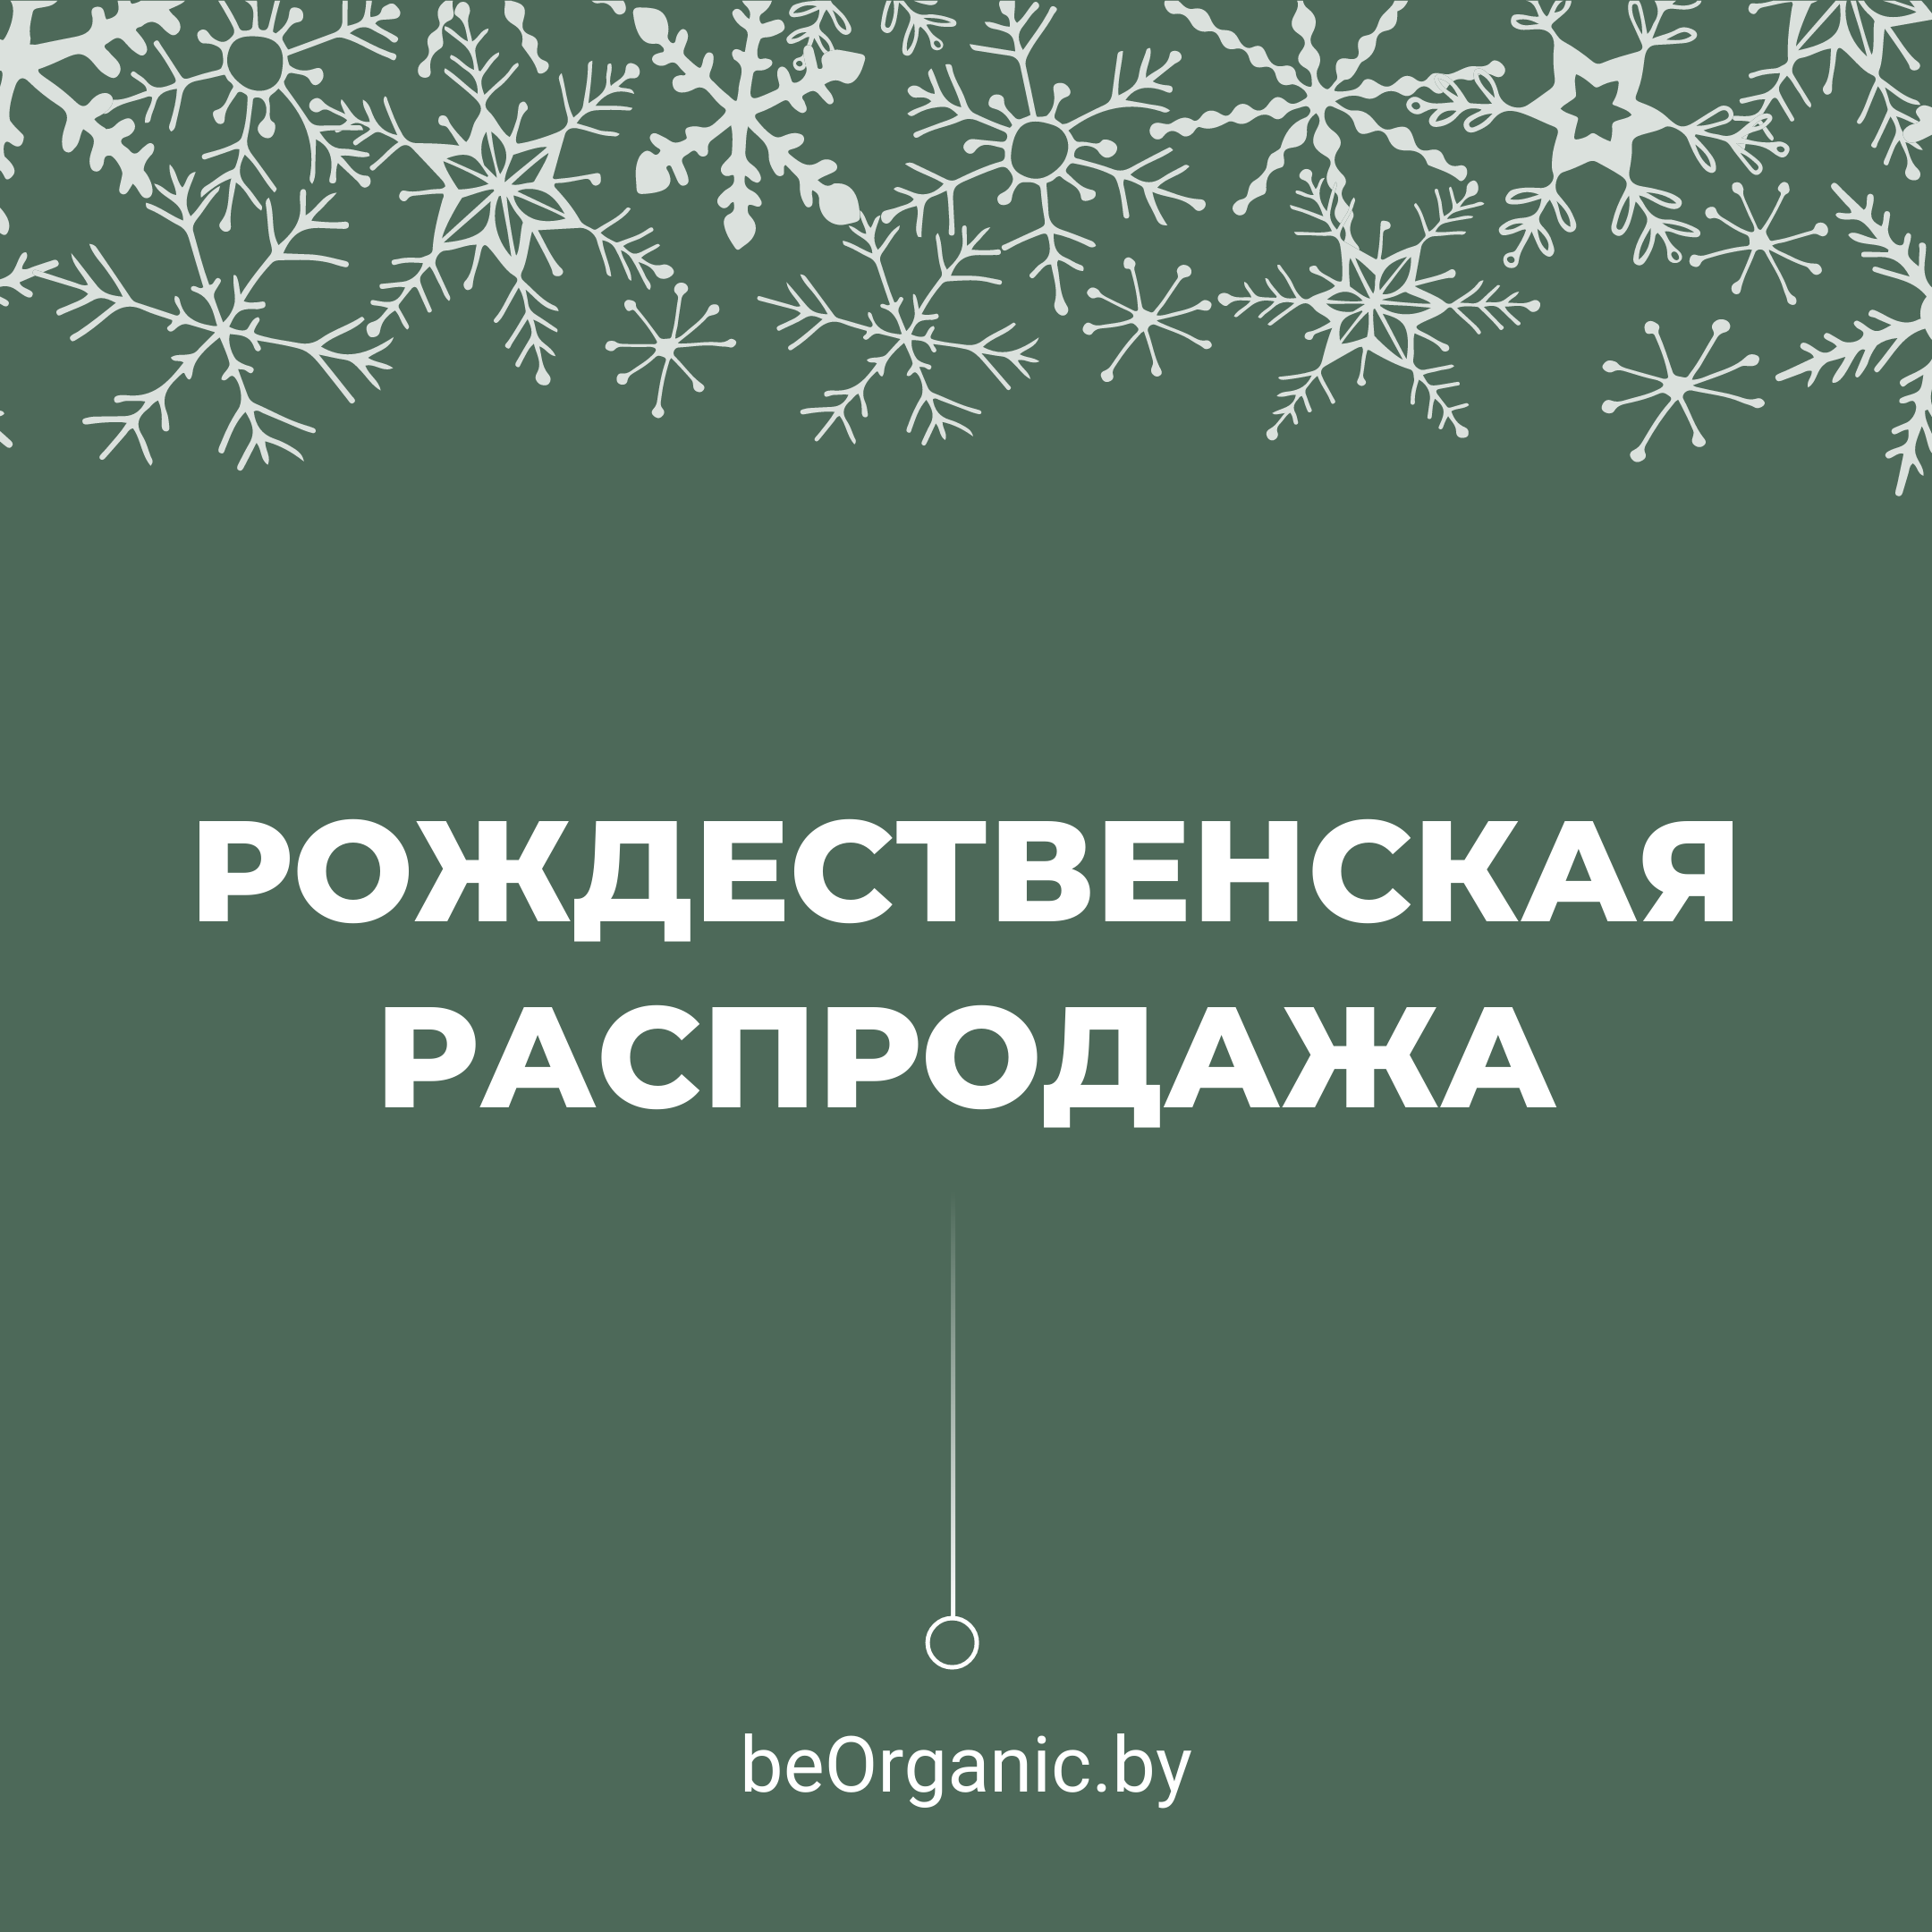 Рождественская распродажа в магазине beOrganic.by